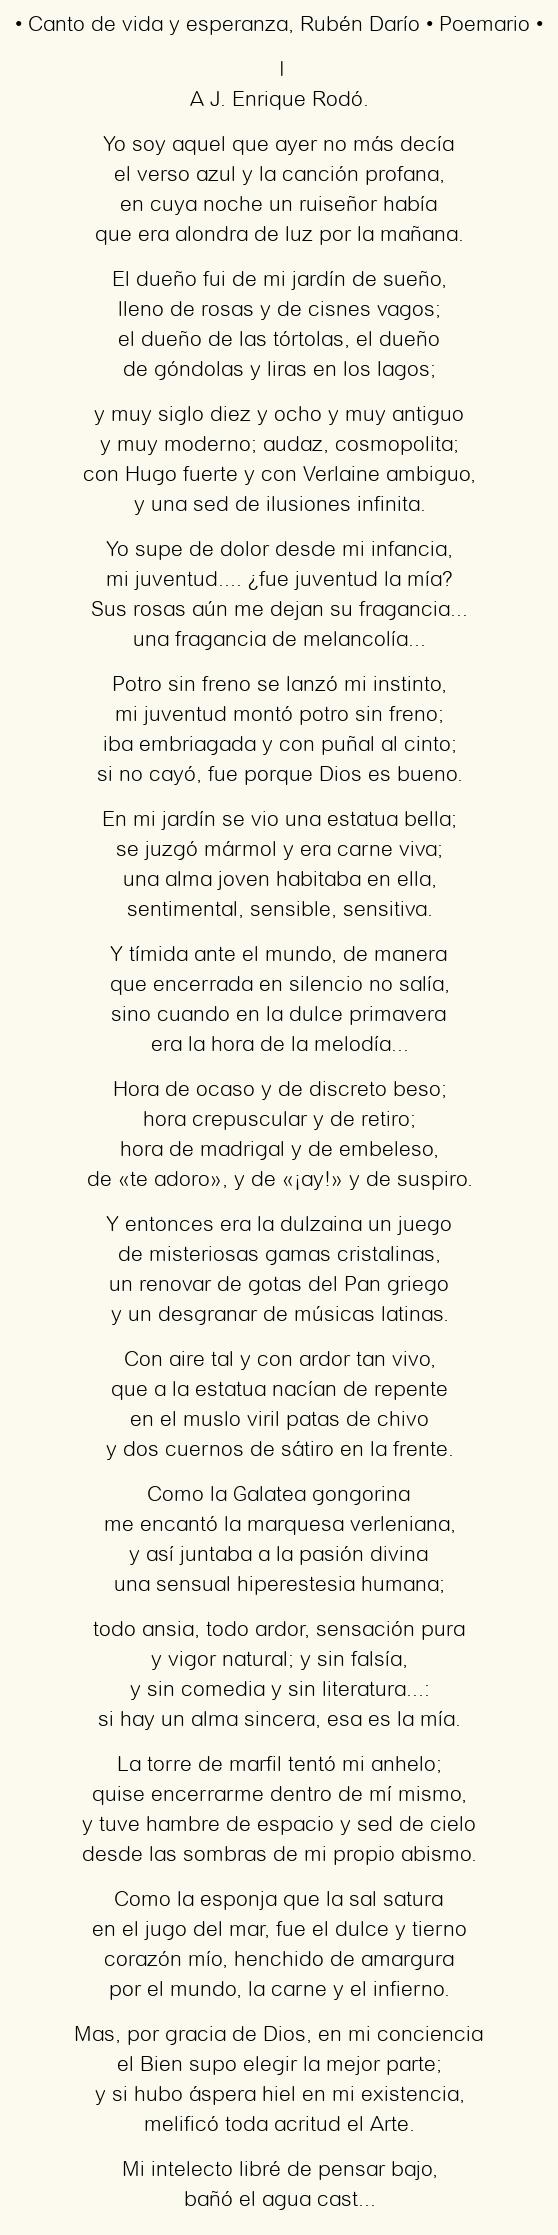 Imagen con el poema Canto de vida y esperanza, por Rubén Darío